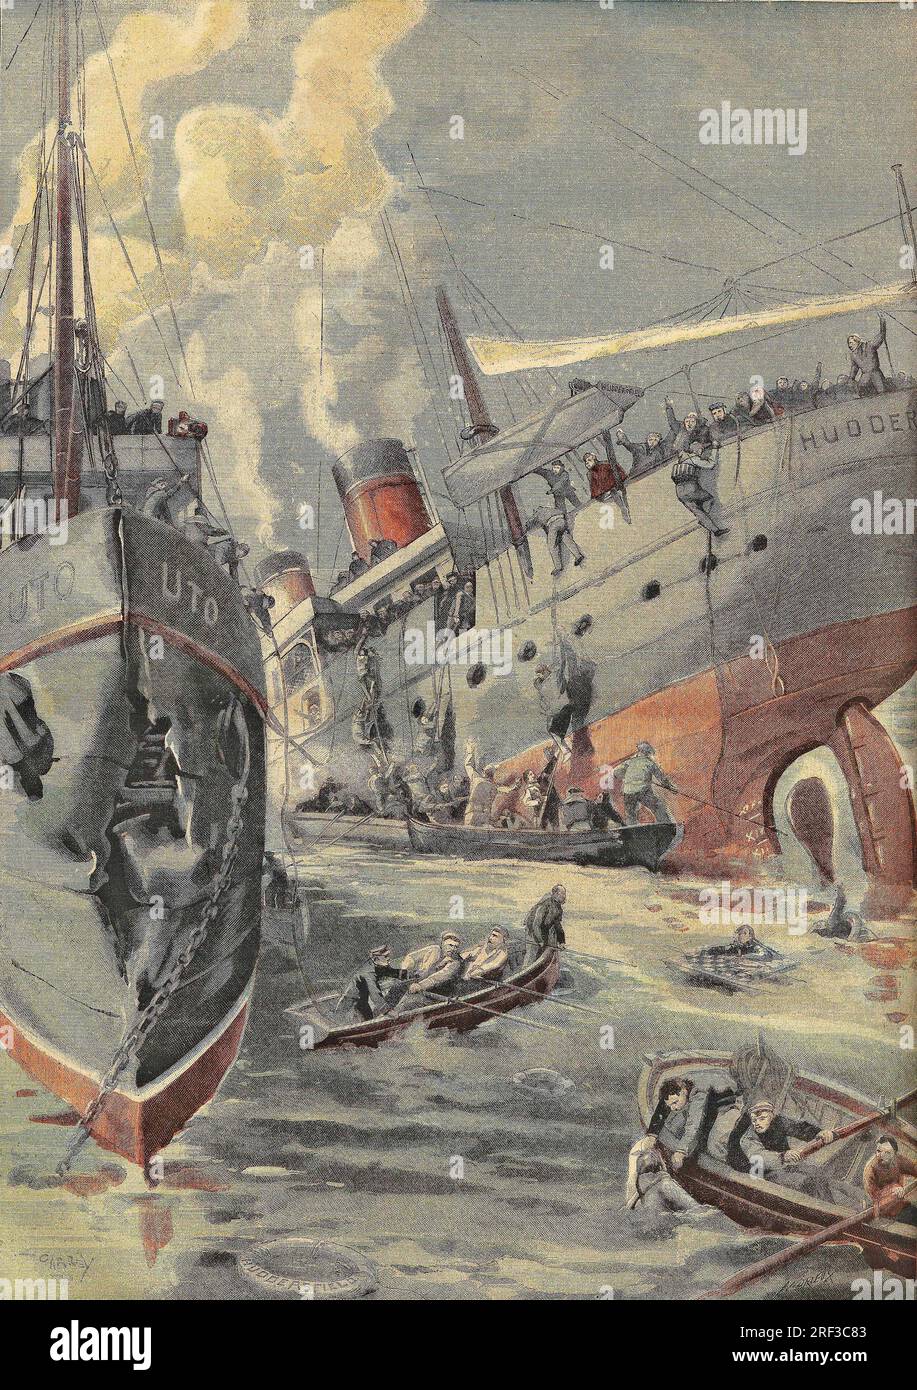 Kollisionsentre le Steamer anglais 'Huddersfield' et le Batiment norvegien 'Uto' sur l'Escaut a Saeftingen. Gravure in 'Le Petit Parisien', le 14061903. Stockfoto